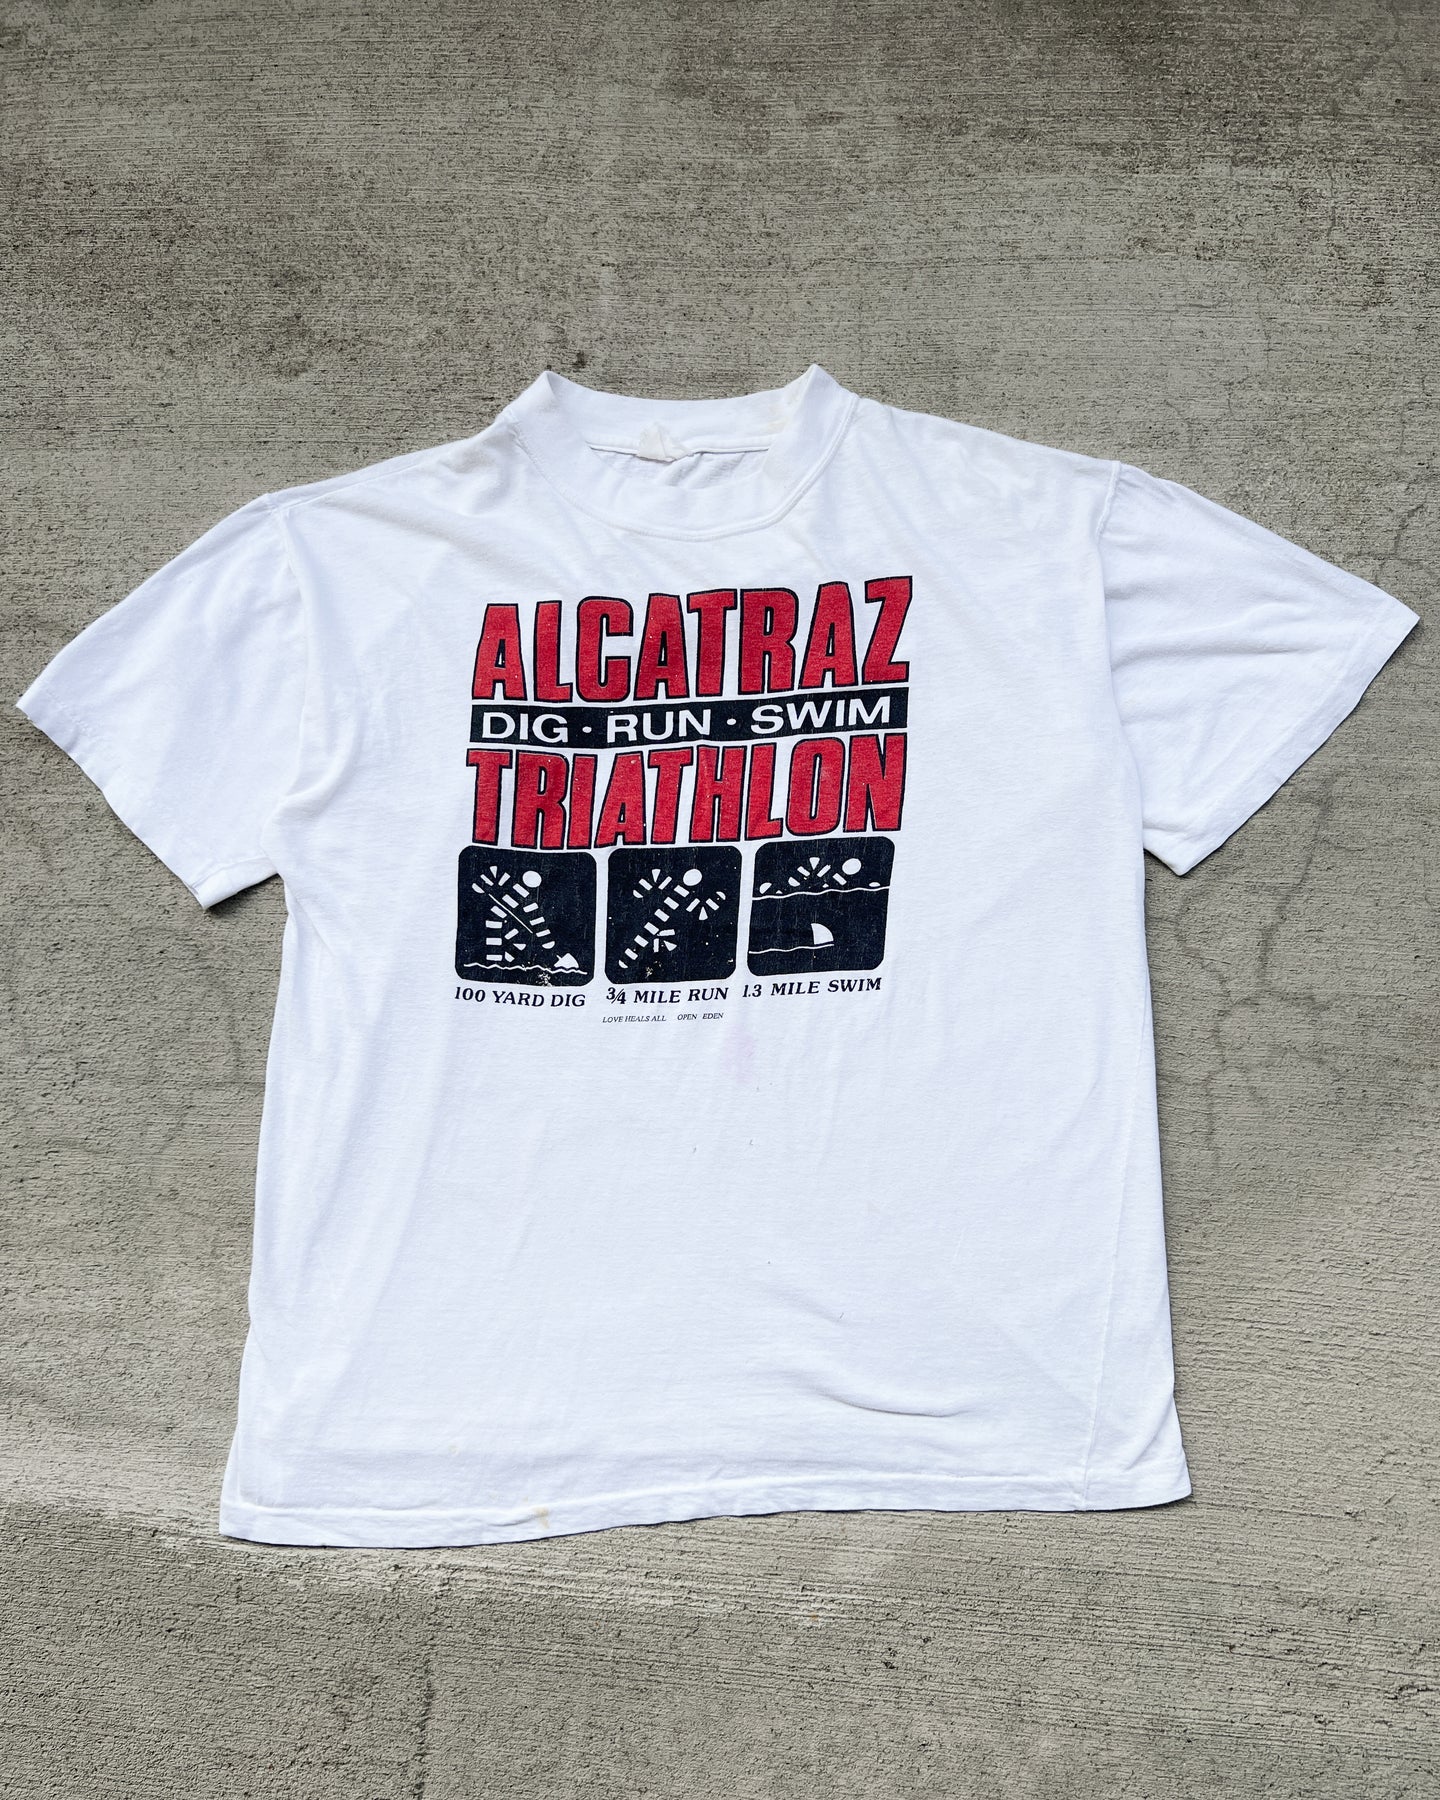 1990s Alcatraz Triathlon Single Stitch Tee - Size Large